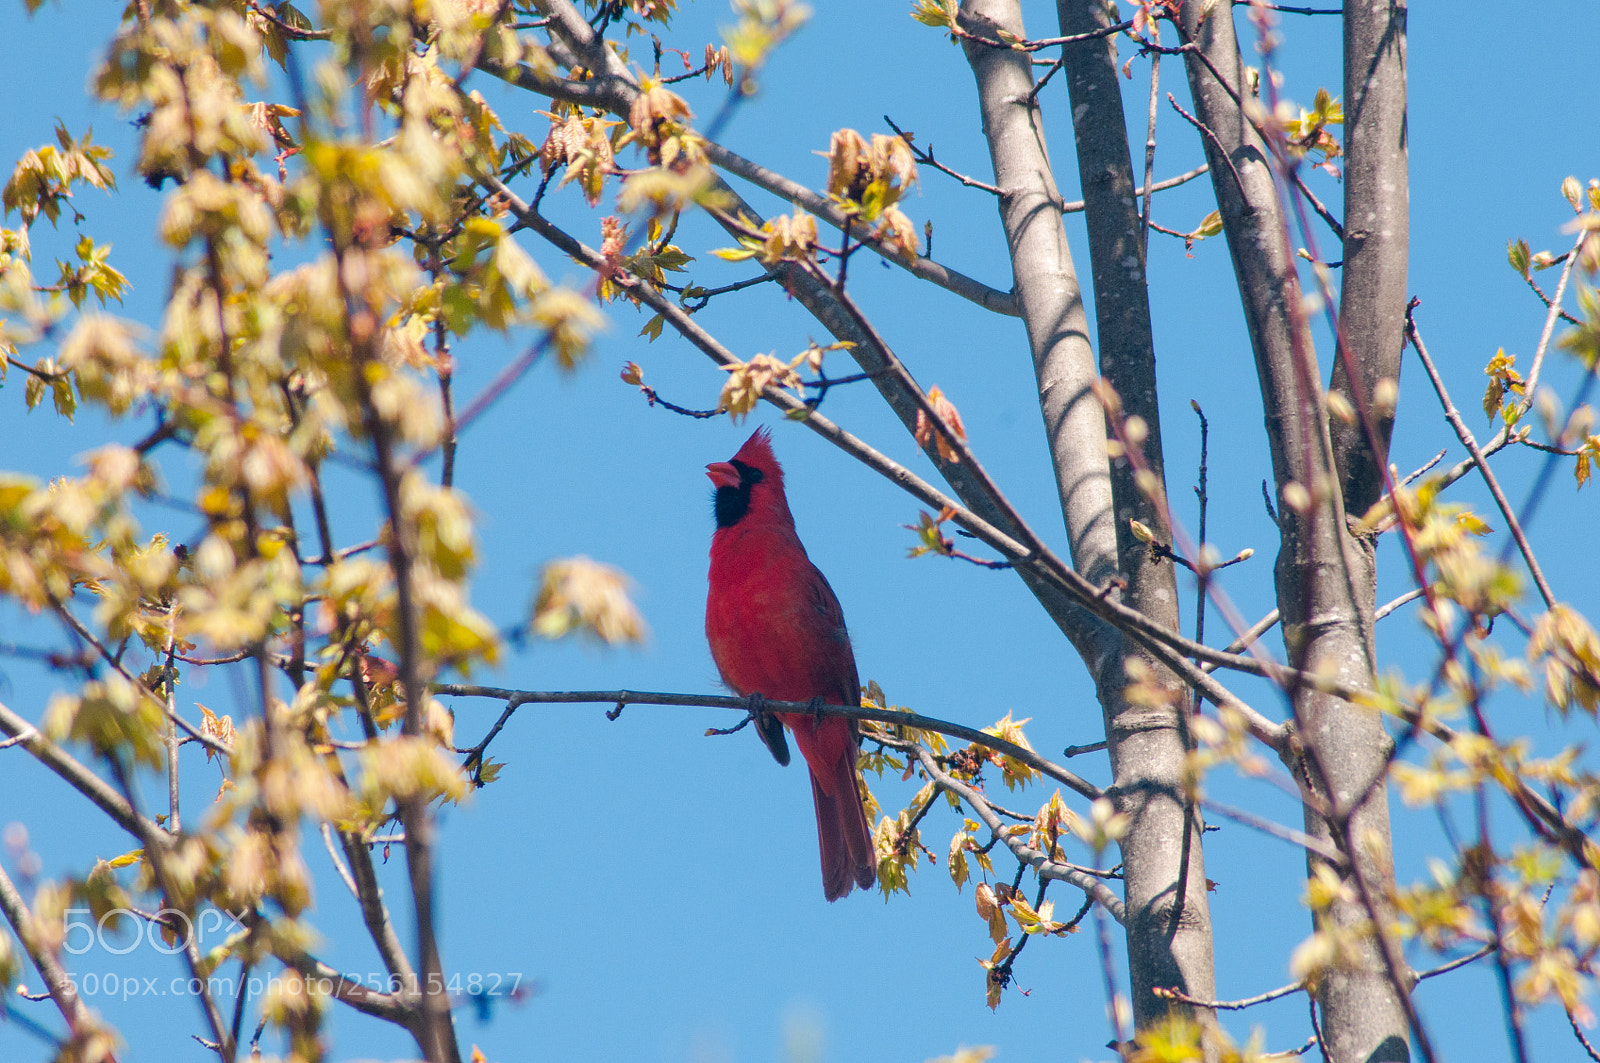 Nikon D300 sample photo. A perched cardinal photography